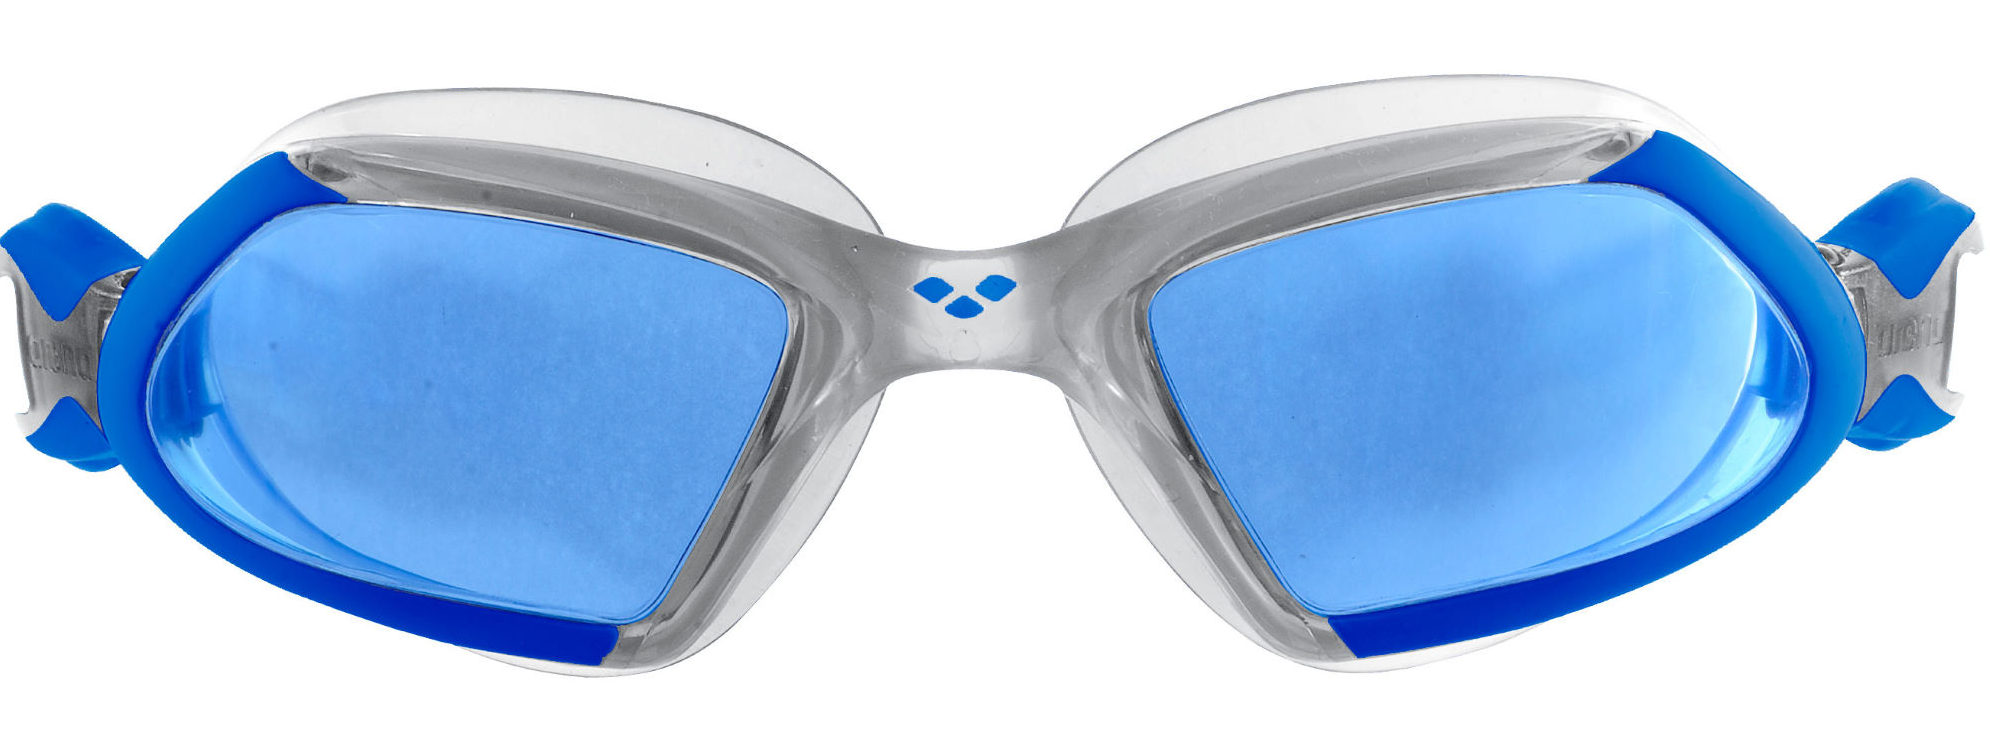 Arena Viper Goggles Blue